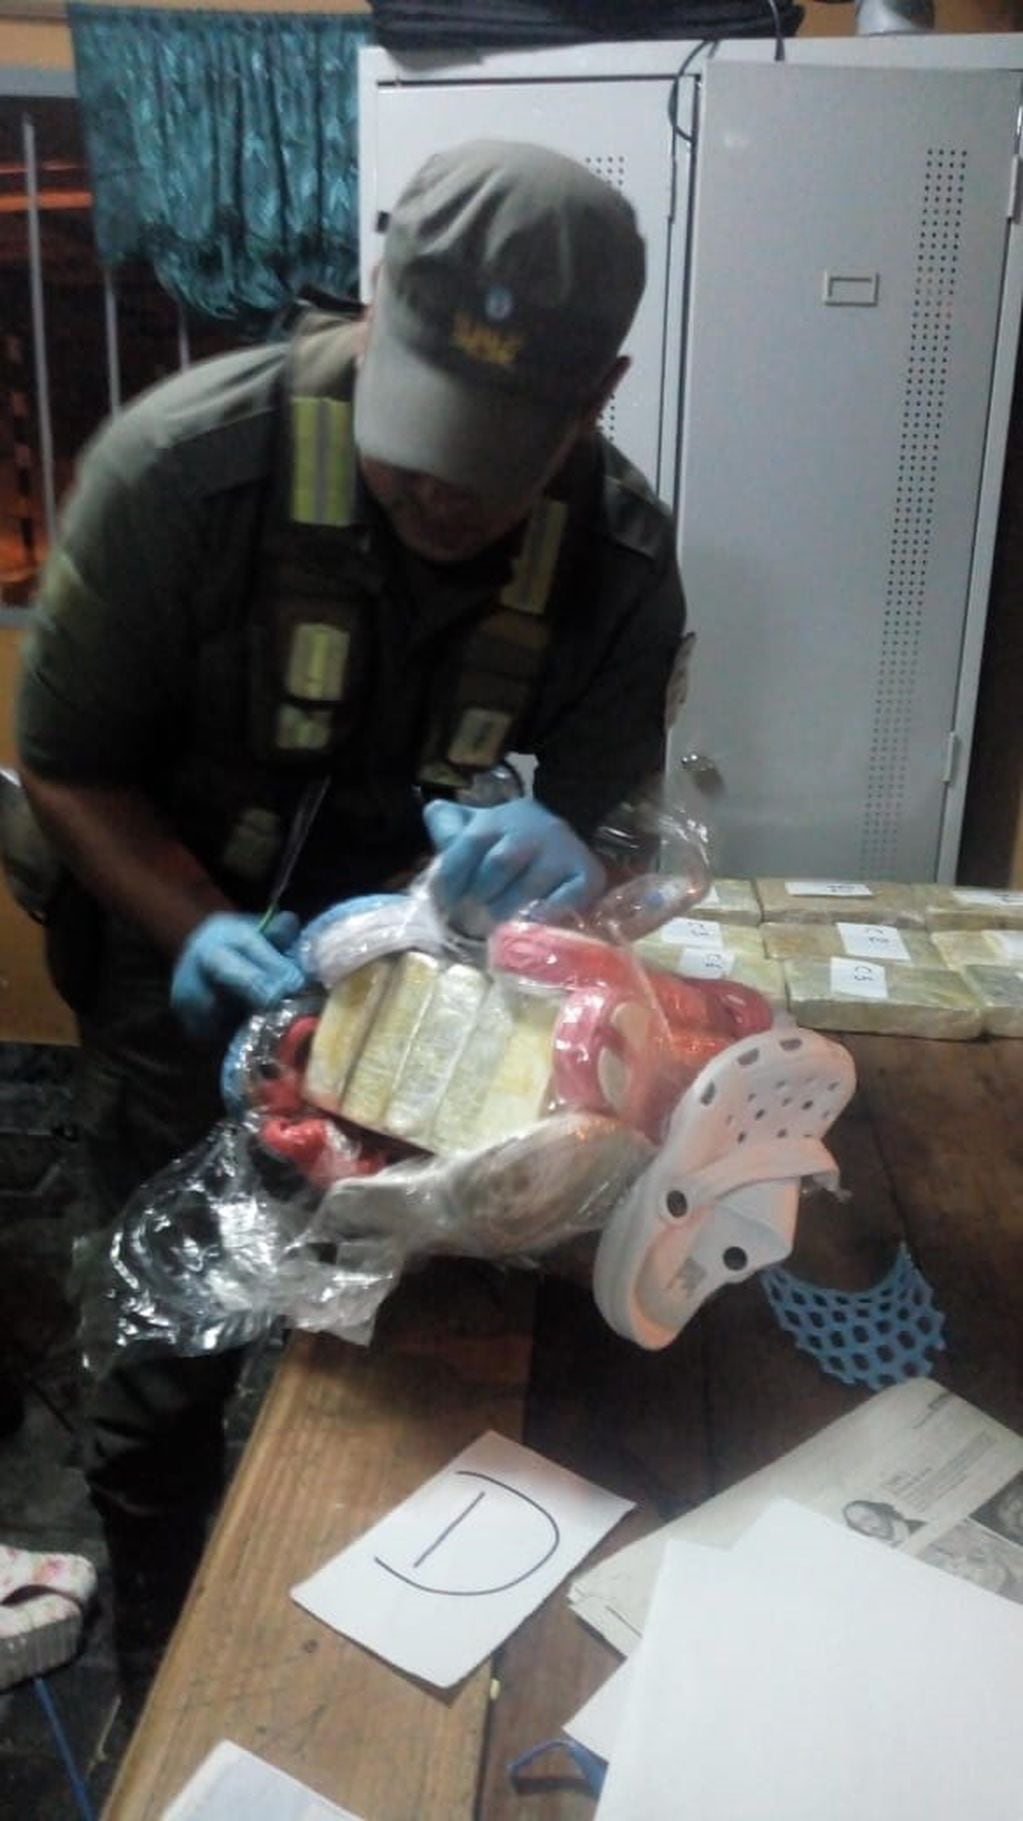 Un gendarme exhibe el hallazgo de droga en la “Operación Sapito Blanco”.